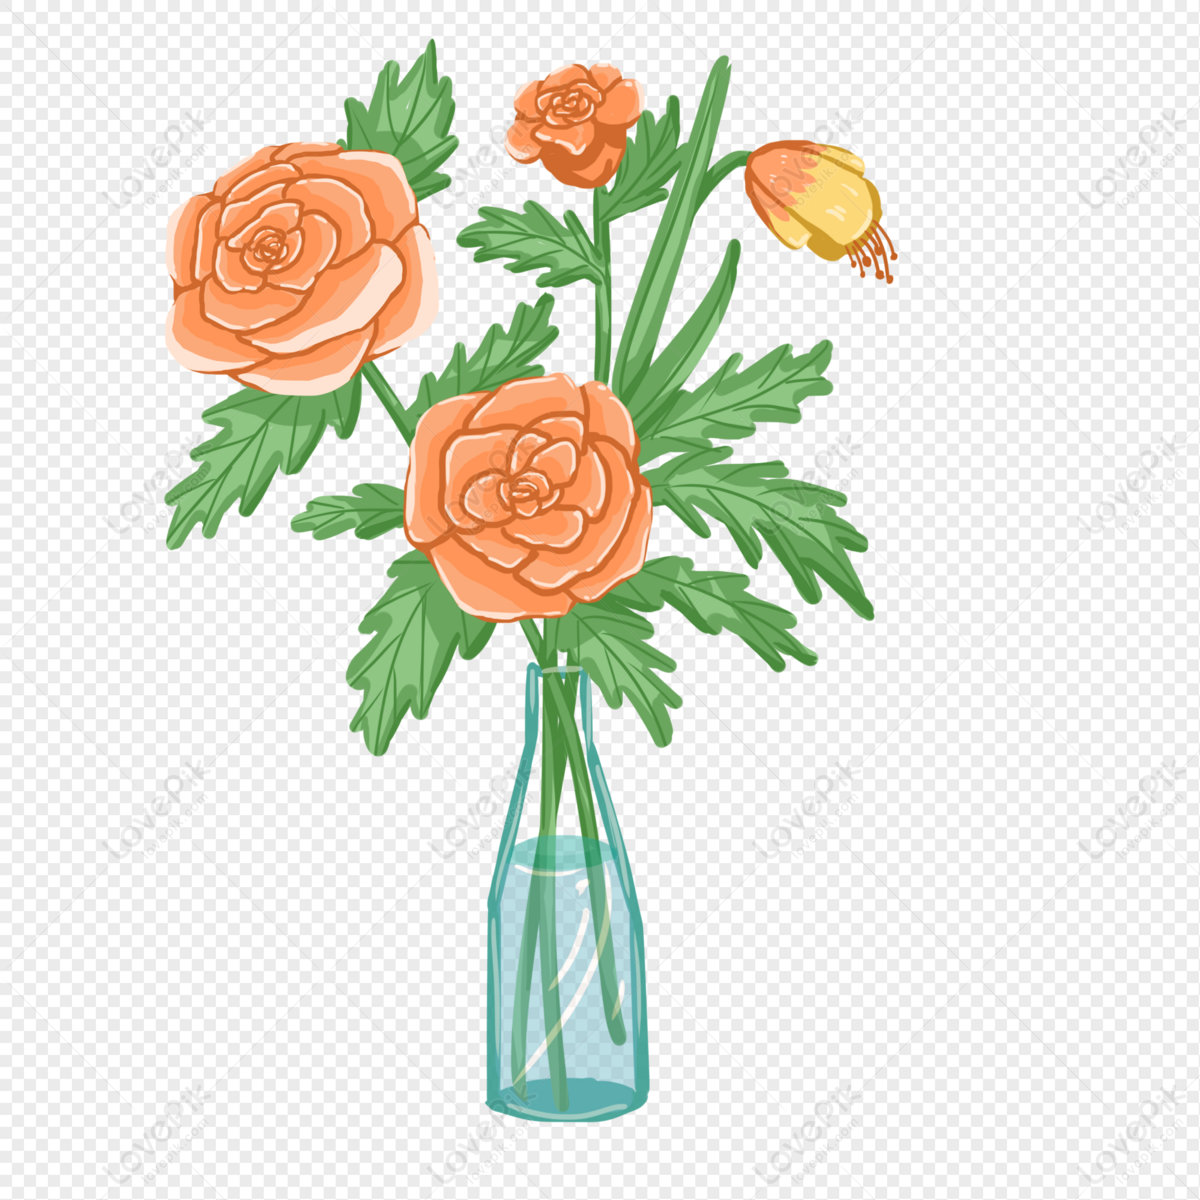 Hình vẽ hoa vase đầy màu sắc tươi tắn sẽ khiến tâm hồn bạn cảm thấy hạnh phúc và dễ chịu. Đừng bỏ lỡ cơ hội chiêm ngưỡng bức tranh đầy sức sống này nhé!